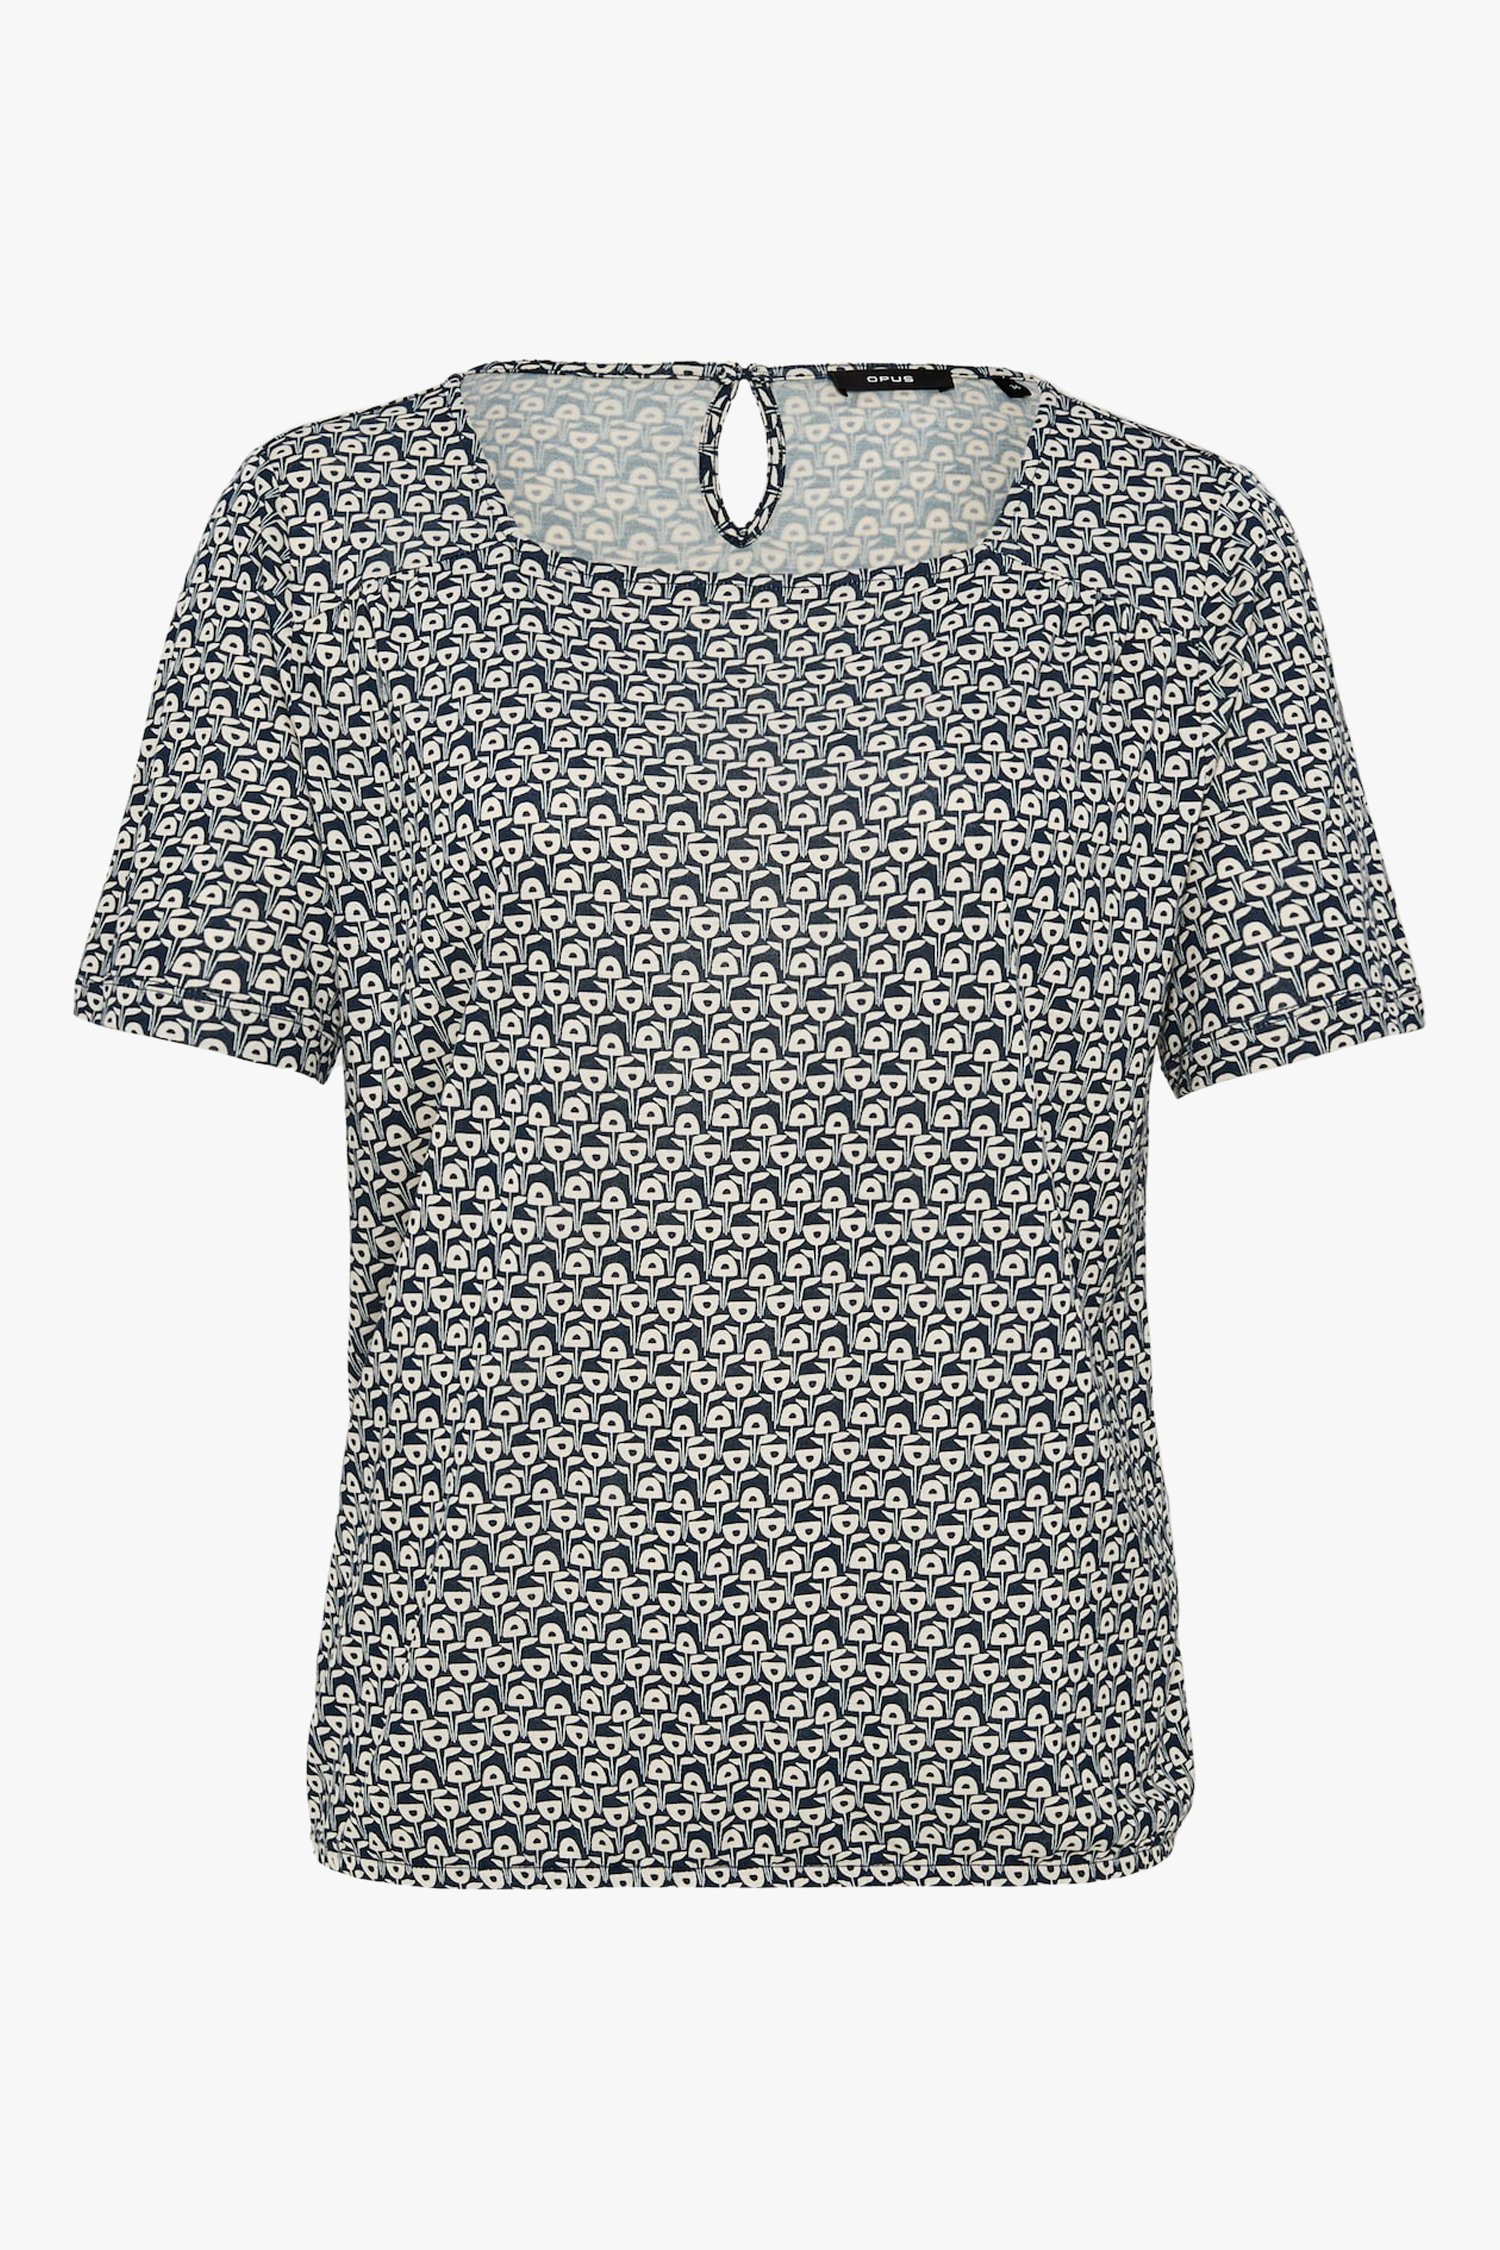 T-shirt gris à imprimé rétro de Opus pour Femmes